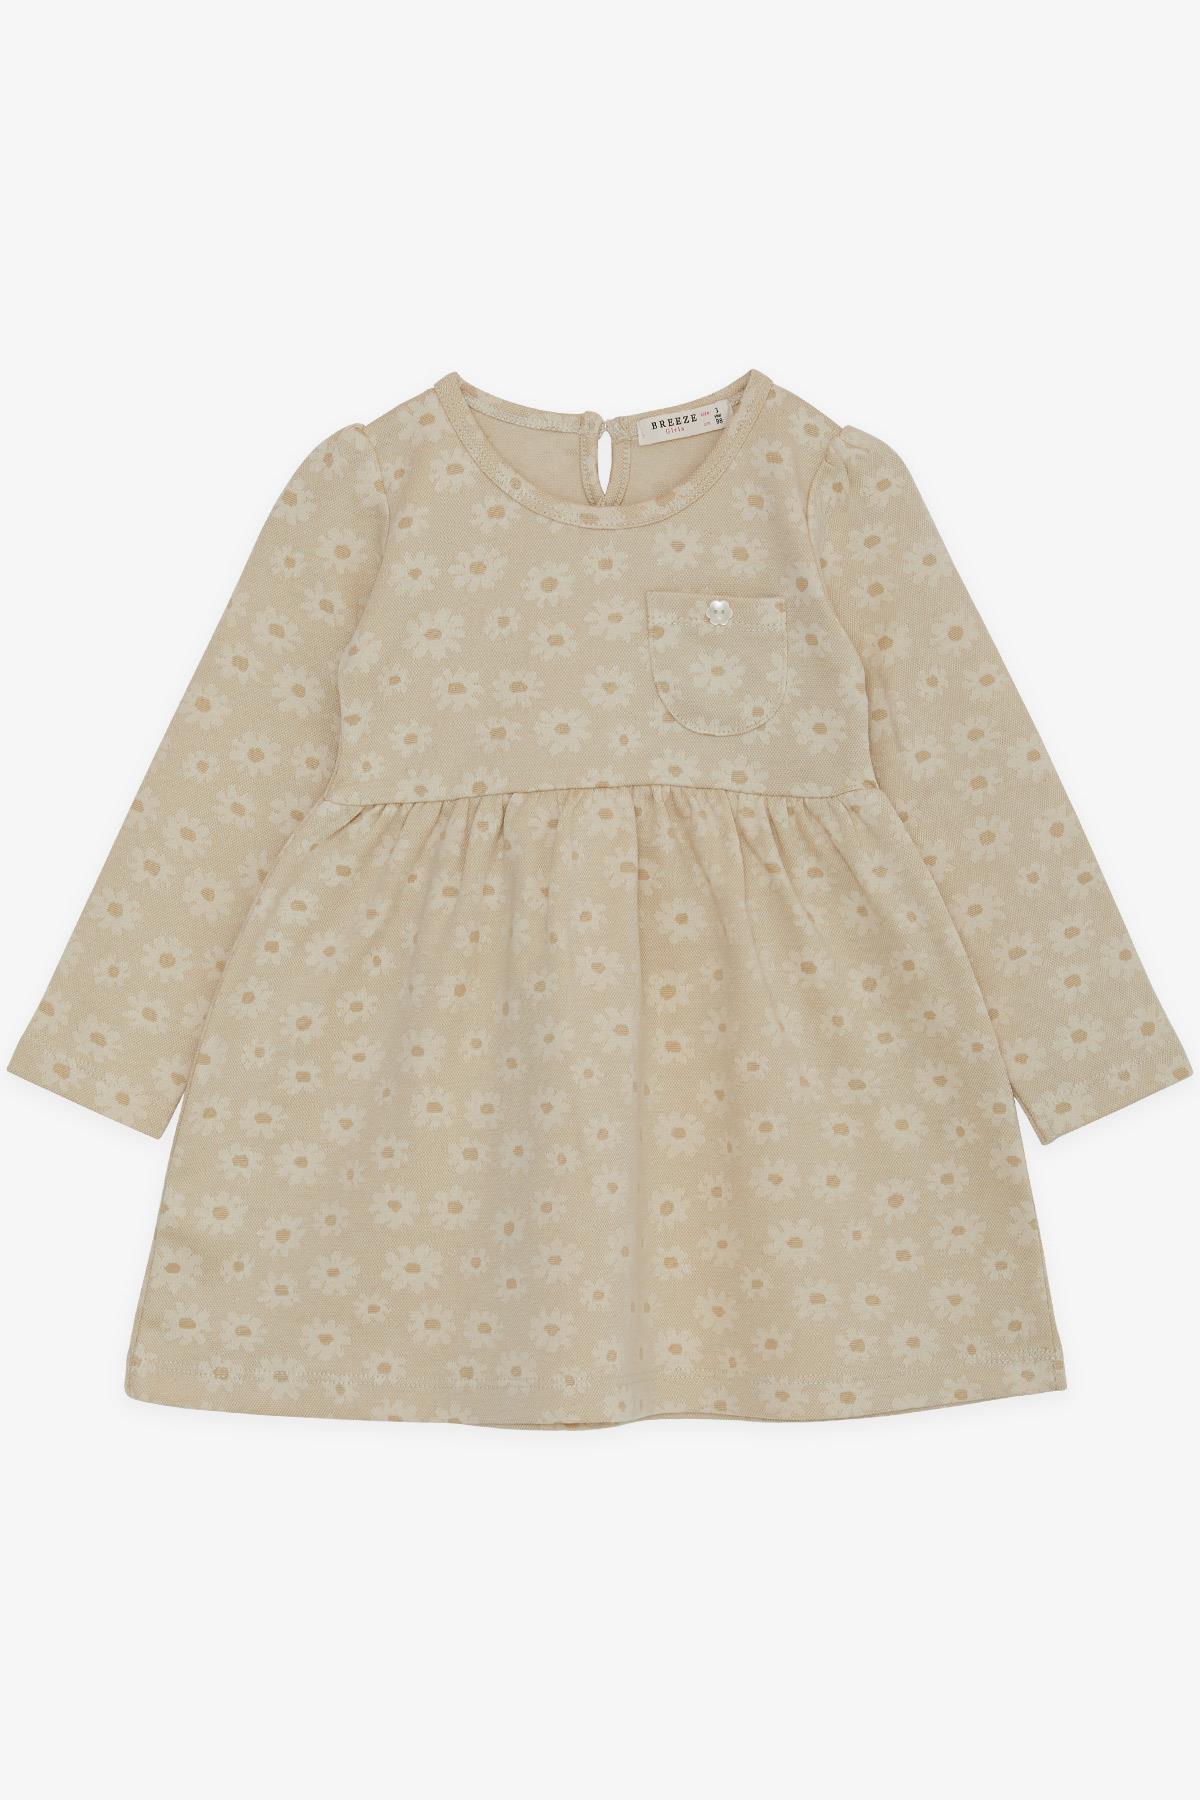 Φλοράλ μακρυμάνικο φόρεμα (1,5-5 ετών)